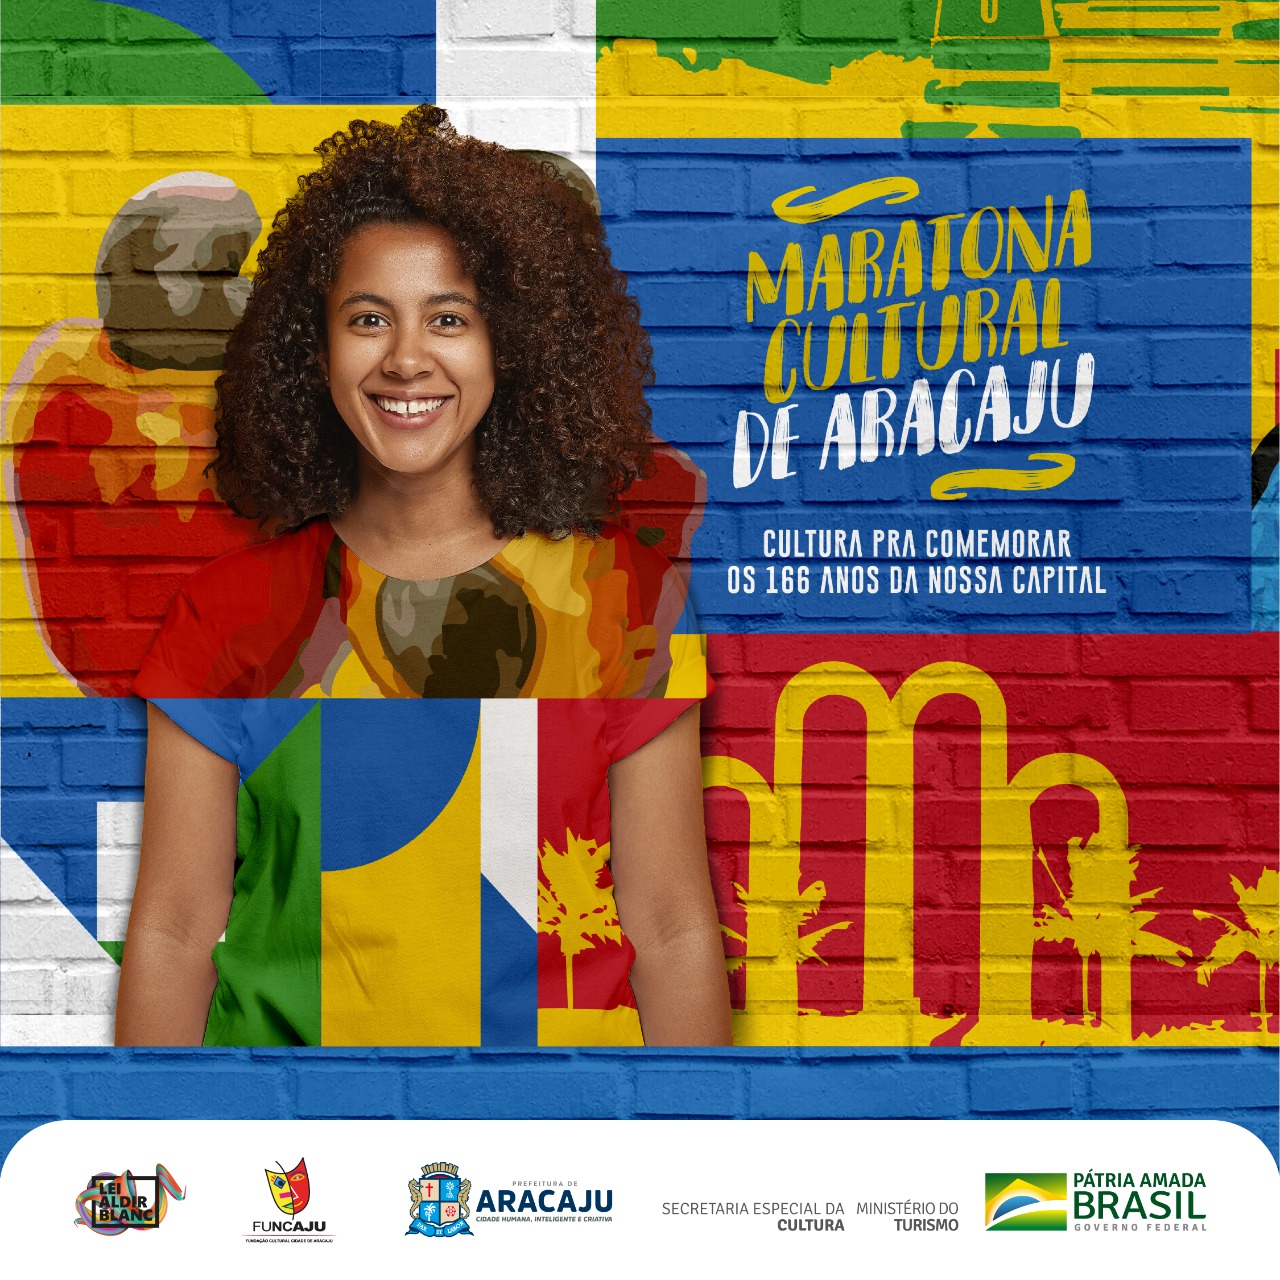 Maratona Cultural de Aracaju